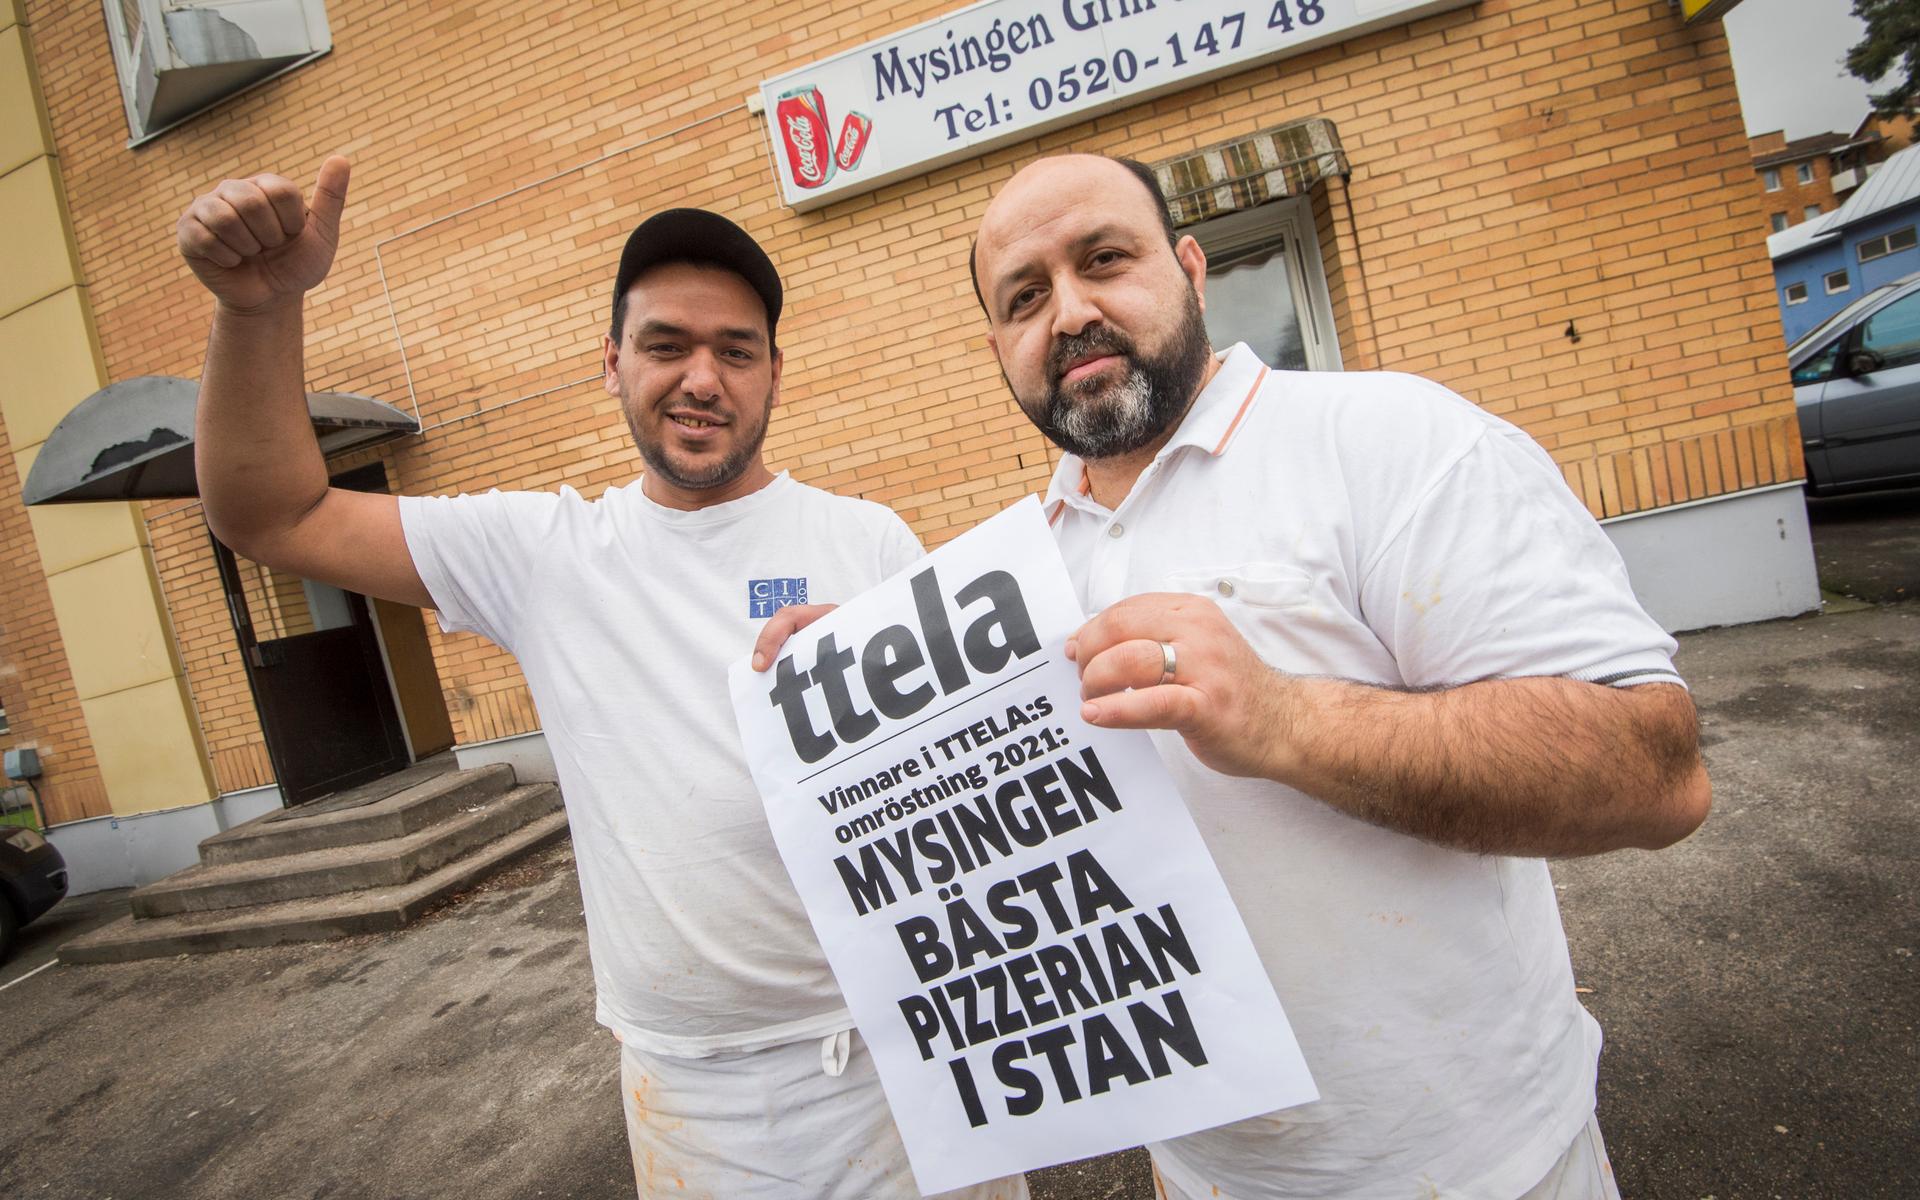 Förra årets vinnare Mysingen har blivit framröstad till en av Trollhättans bästa pizzerior av TTELA:s läsare, i år igen.